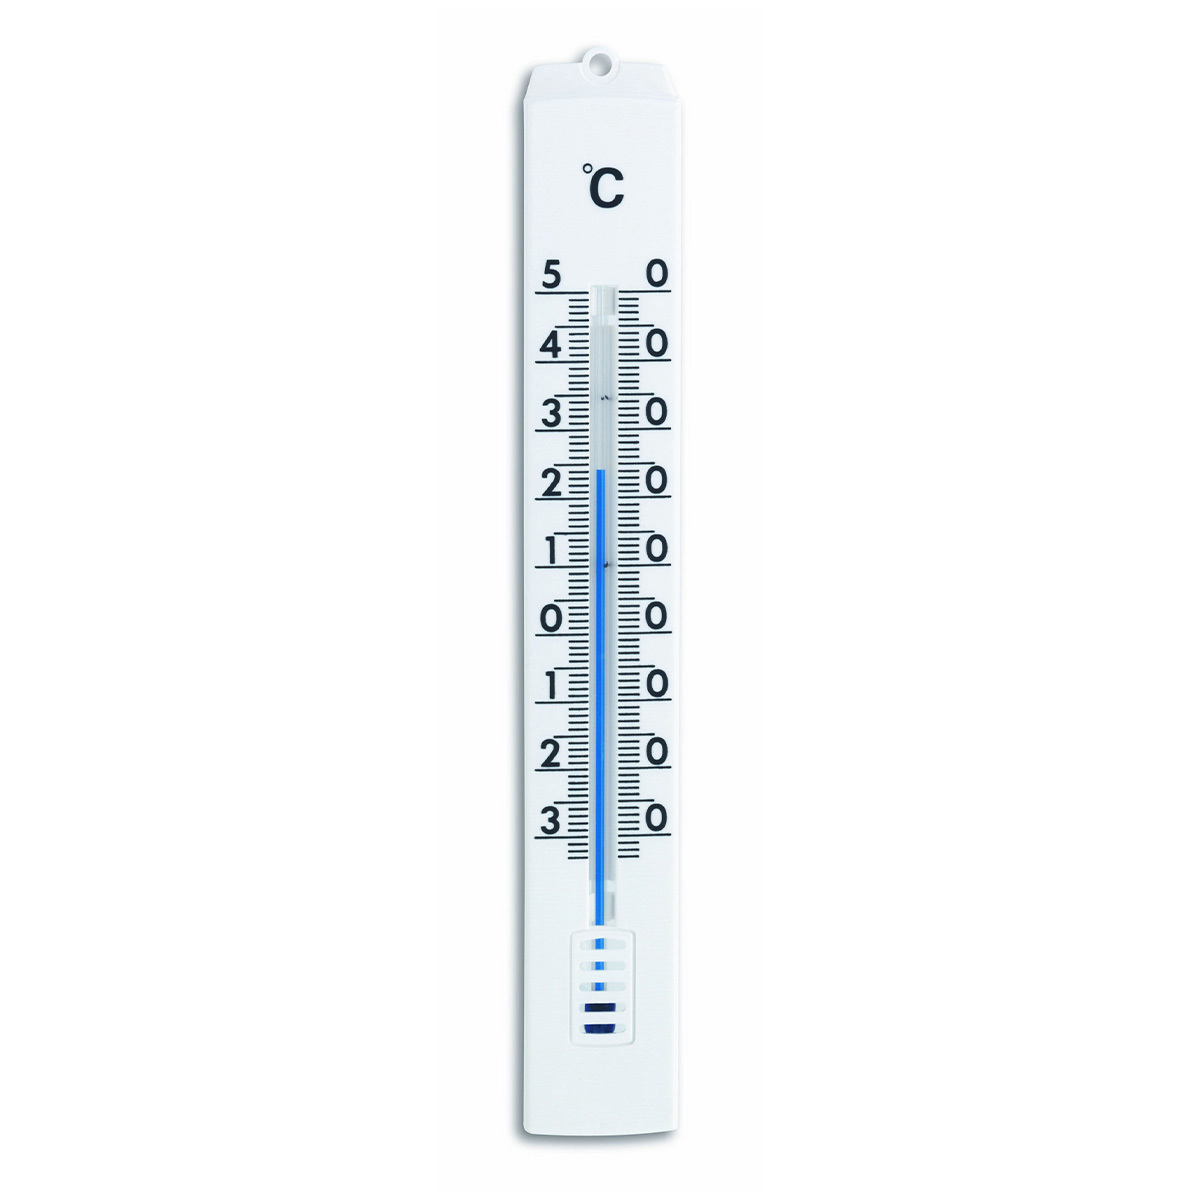 Analoges Innen-Außen-Thermometer aus Metall